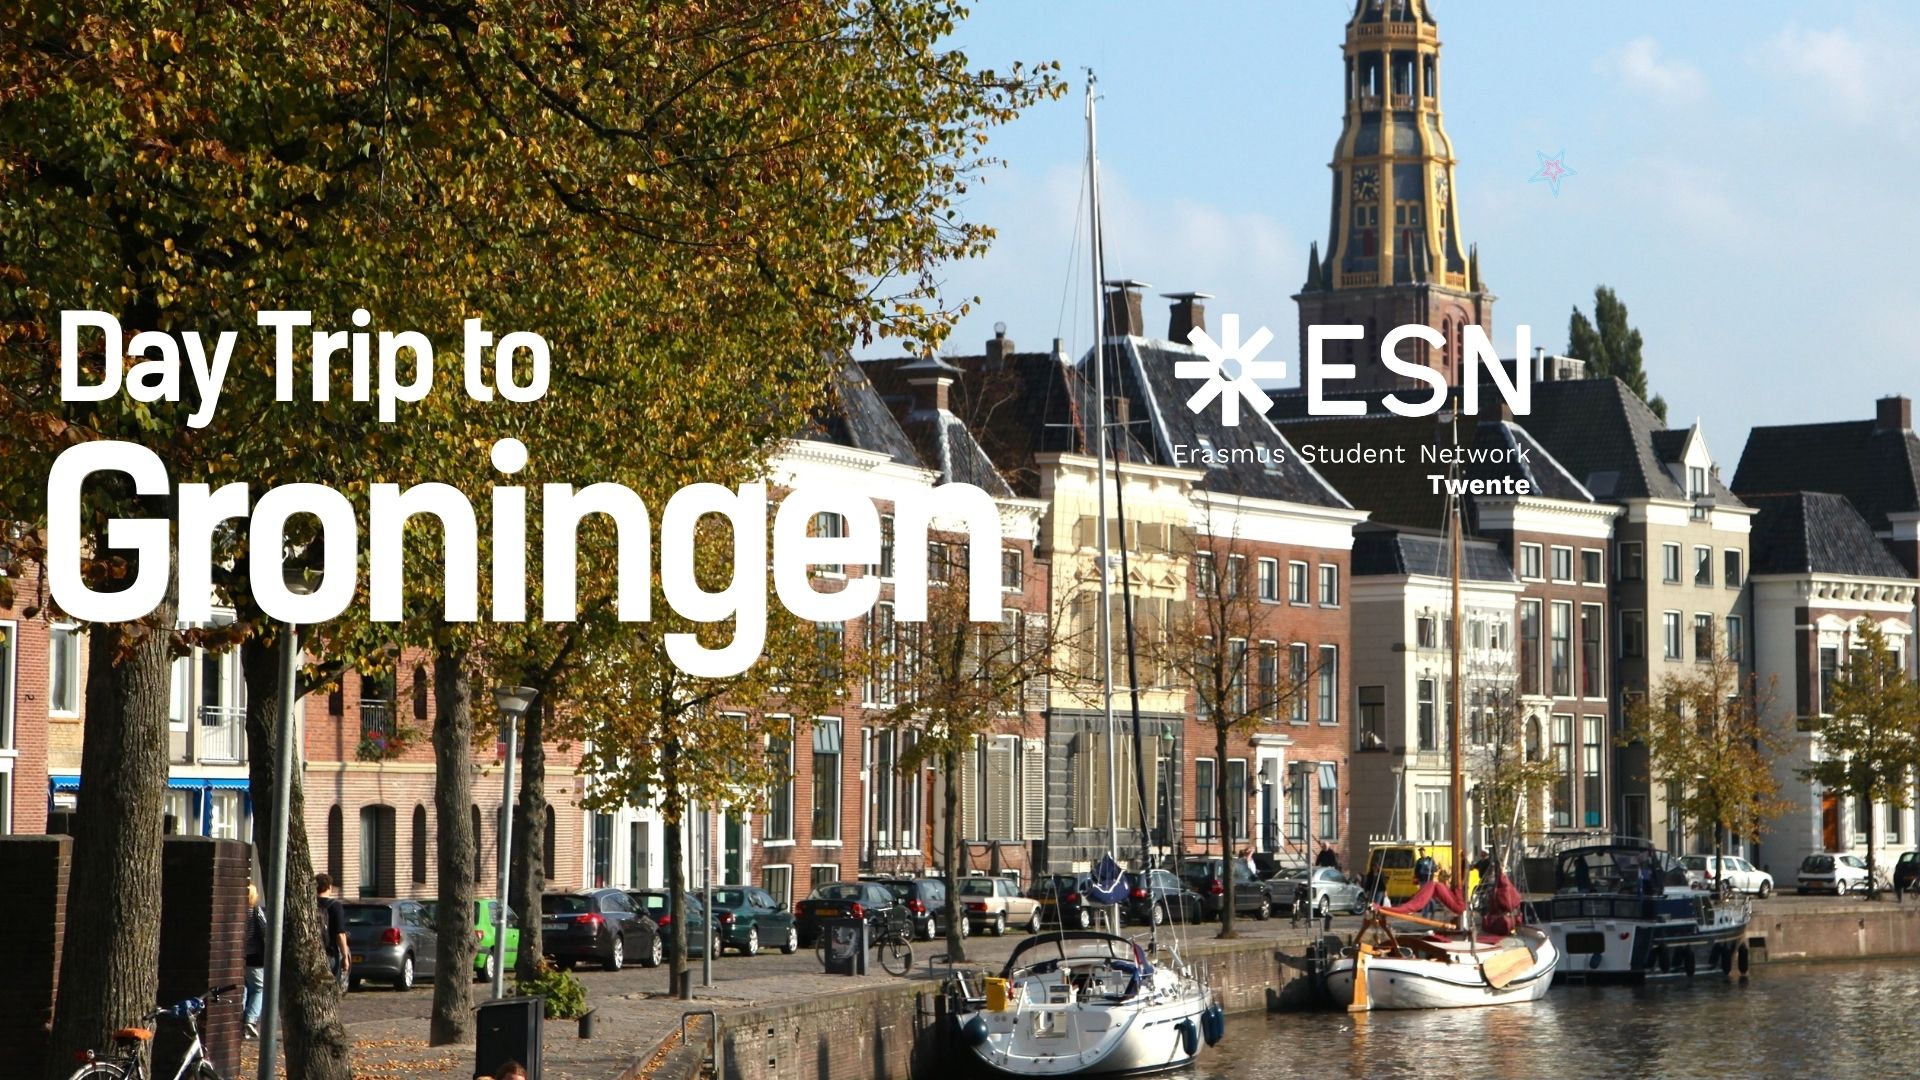 Day Trip to Groningen header